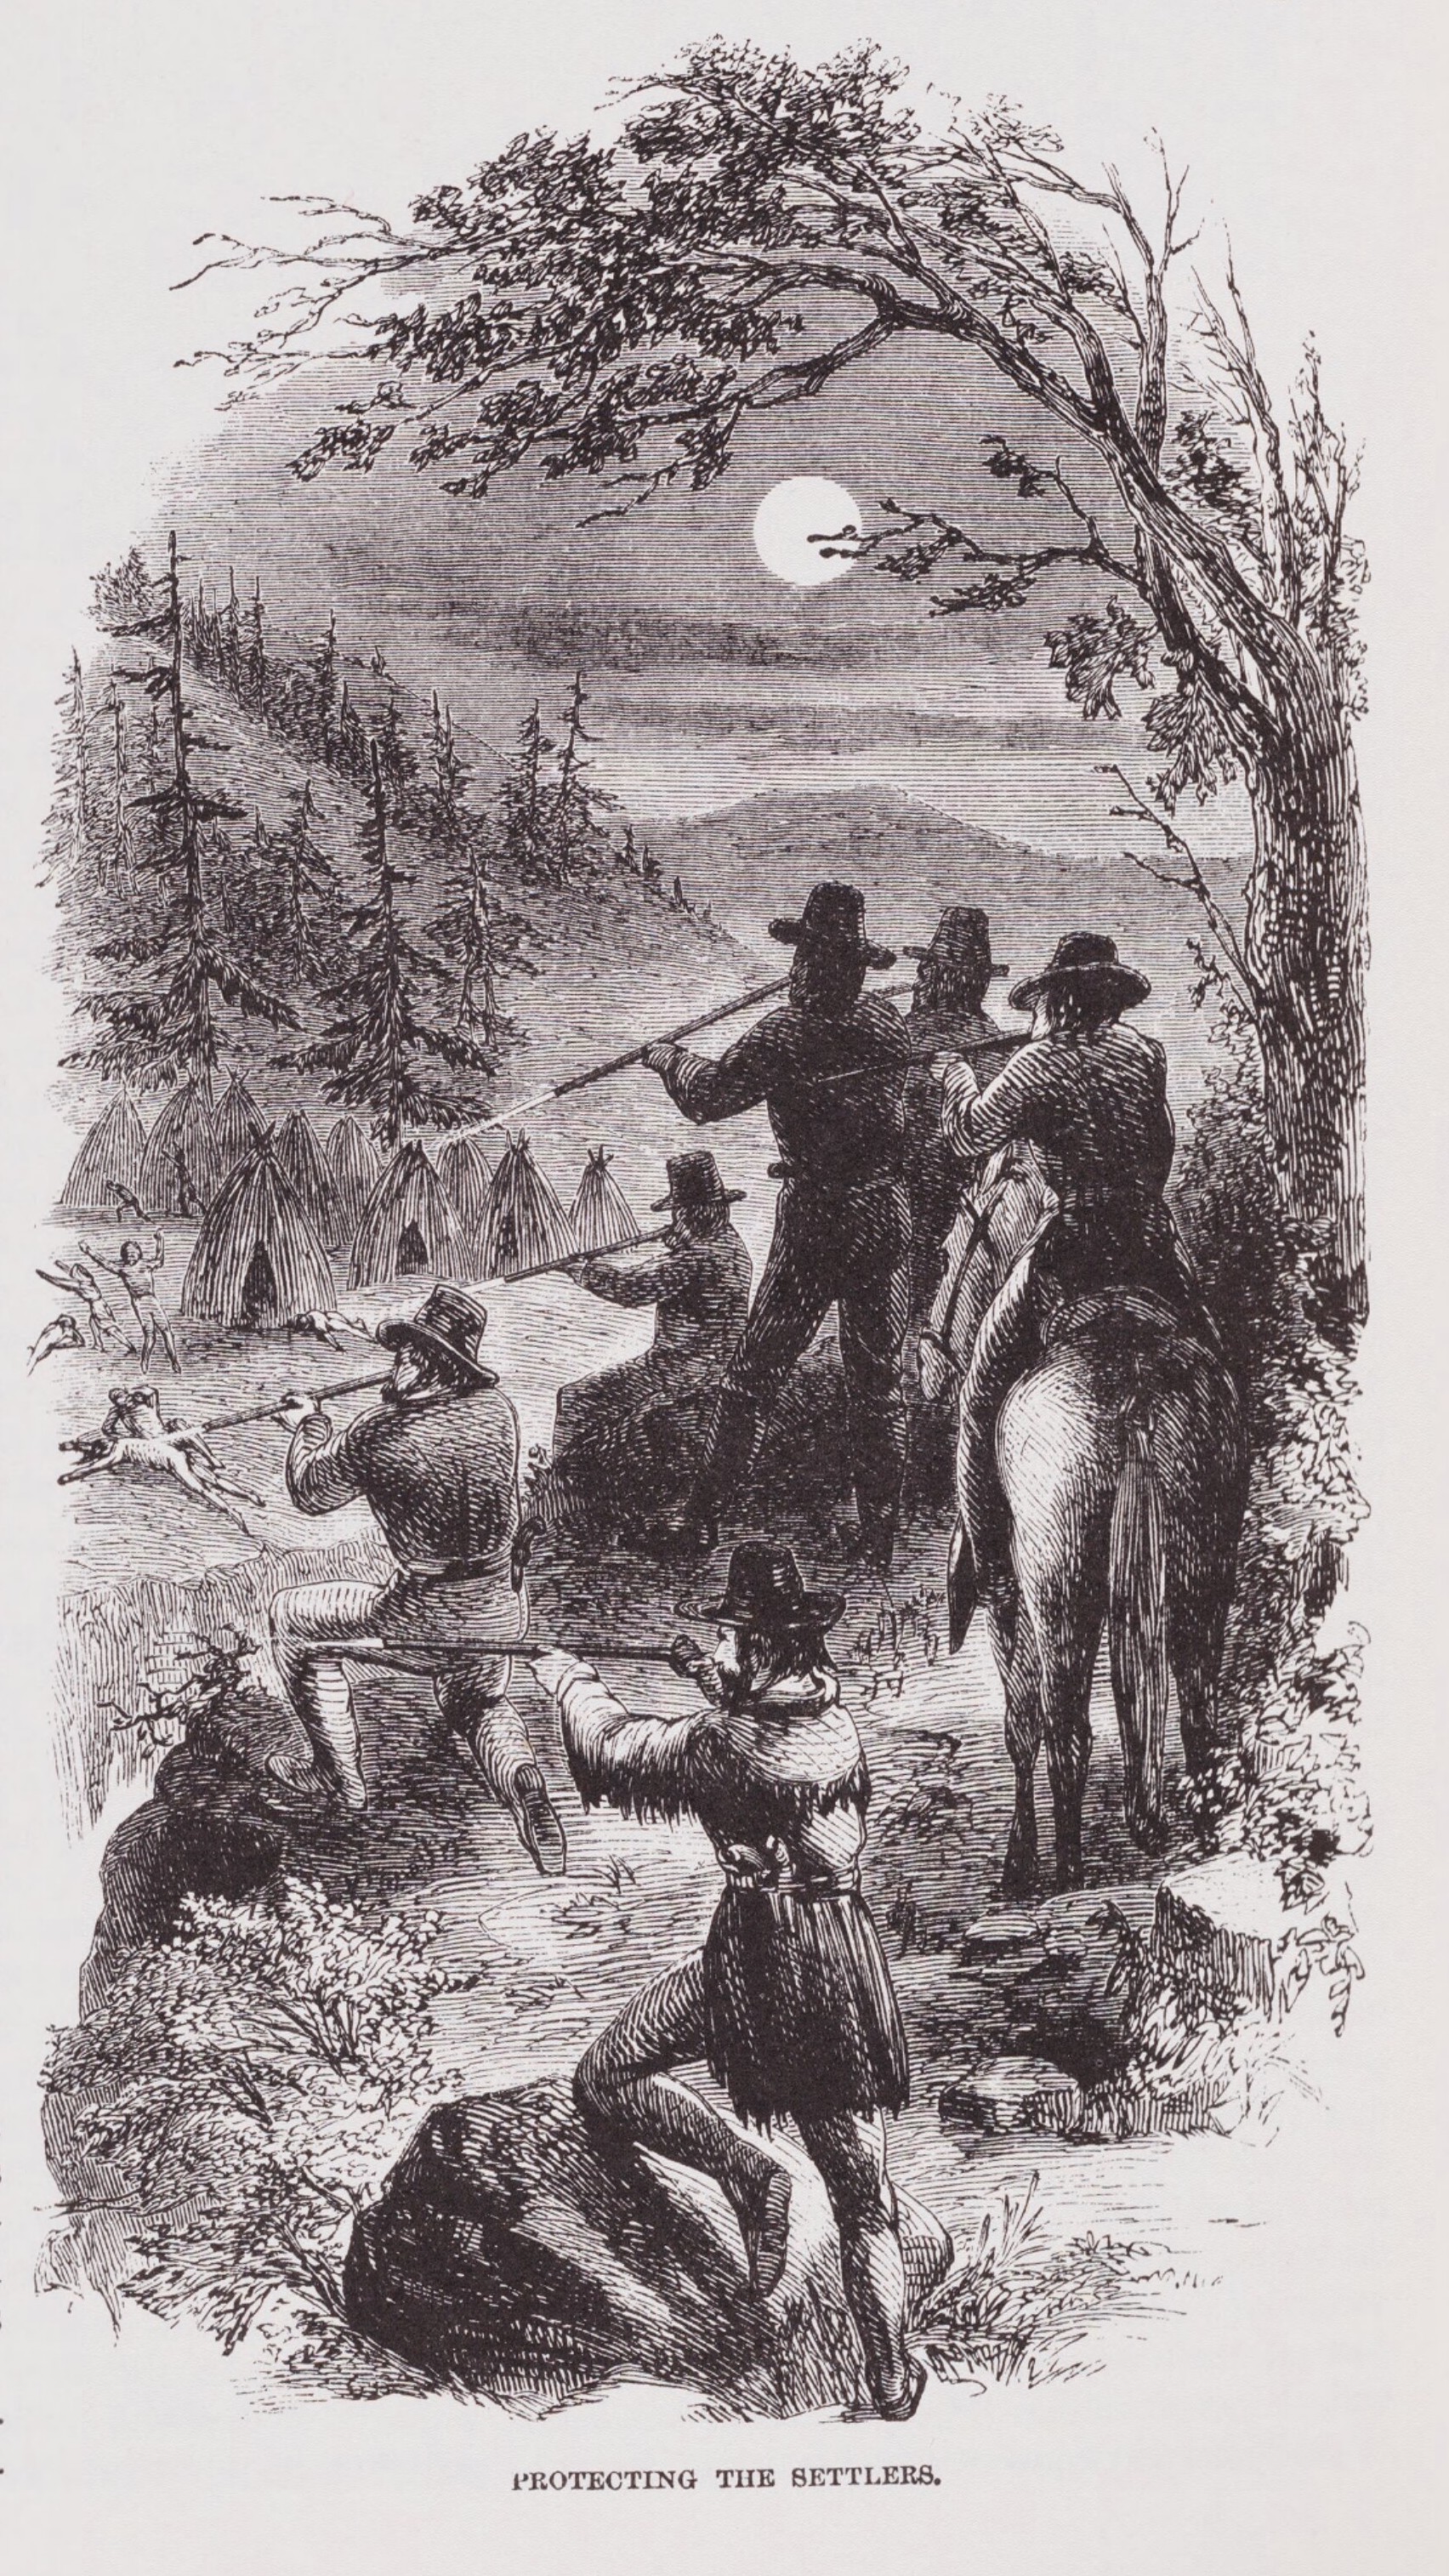 This illustration portrays militia men massacring Native Americans in California.